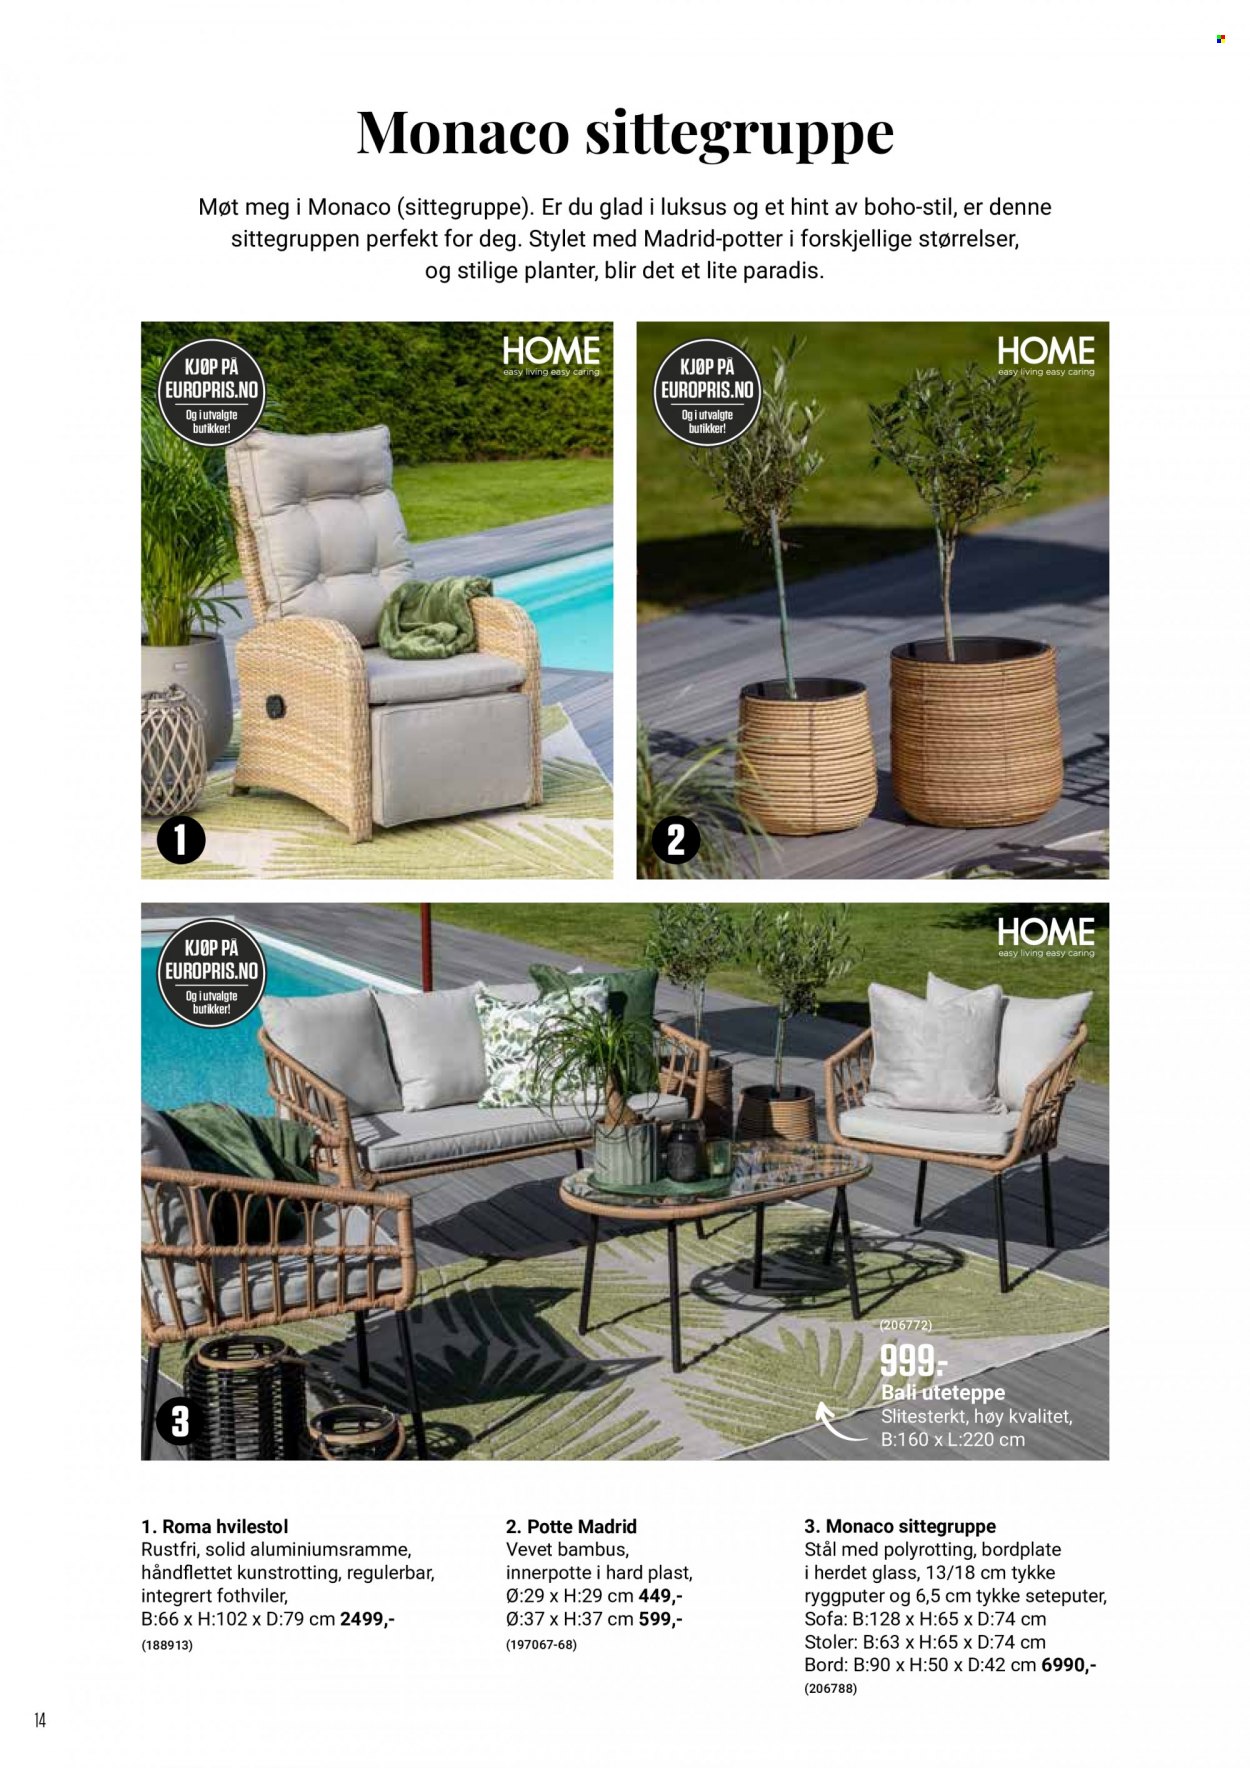 thumbnail - Kundeavis Europris - Produkter fra tilbudsaviser - stol, hvilestol, sofa, bord, uteteppe, planter. Side 14.